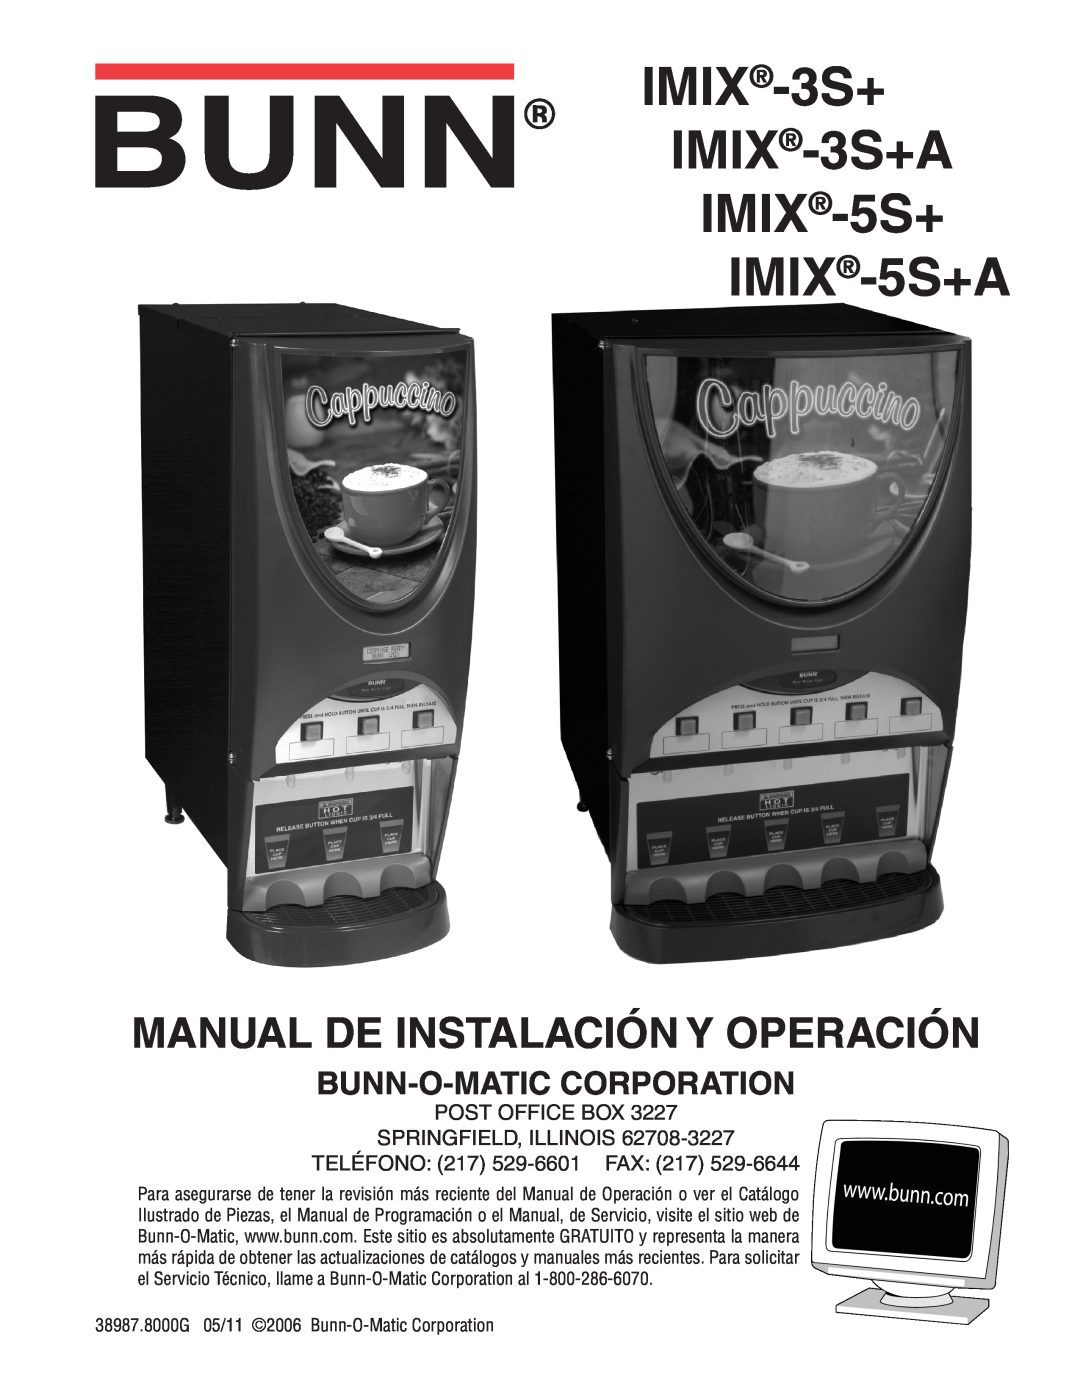 Bunn manual IMIX-3S+ IMIX-3S+A IMIX-5S+ IMIX-5S+A, Manual De Instalación Y Operación, Bunn-O-Matic Corporation 